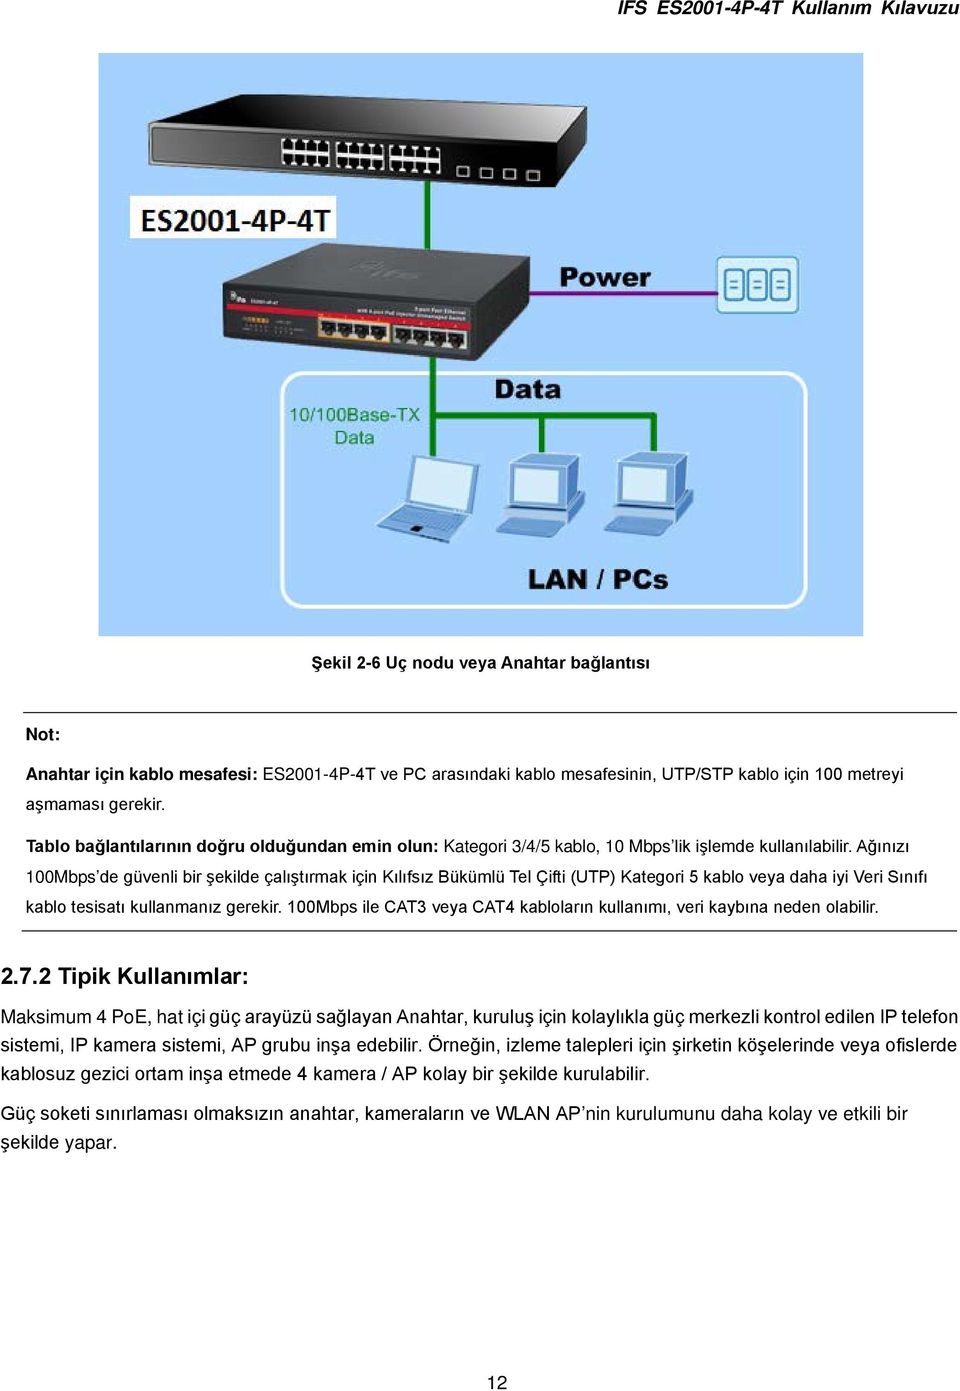 Ağınızı 100Mbps de güvenli bir şekilde çalıştırmak için Kılıfsız Bükümlü Tel Çifti (UTP) Kategori 5 kablo veya daha iyi Veri Sınıfı kablo tesisatı kullanmanız gerekir.